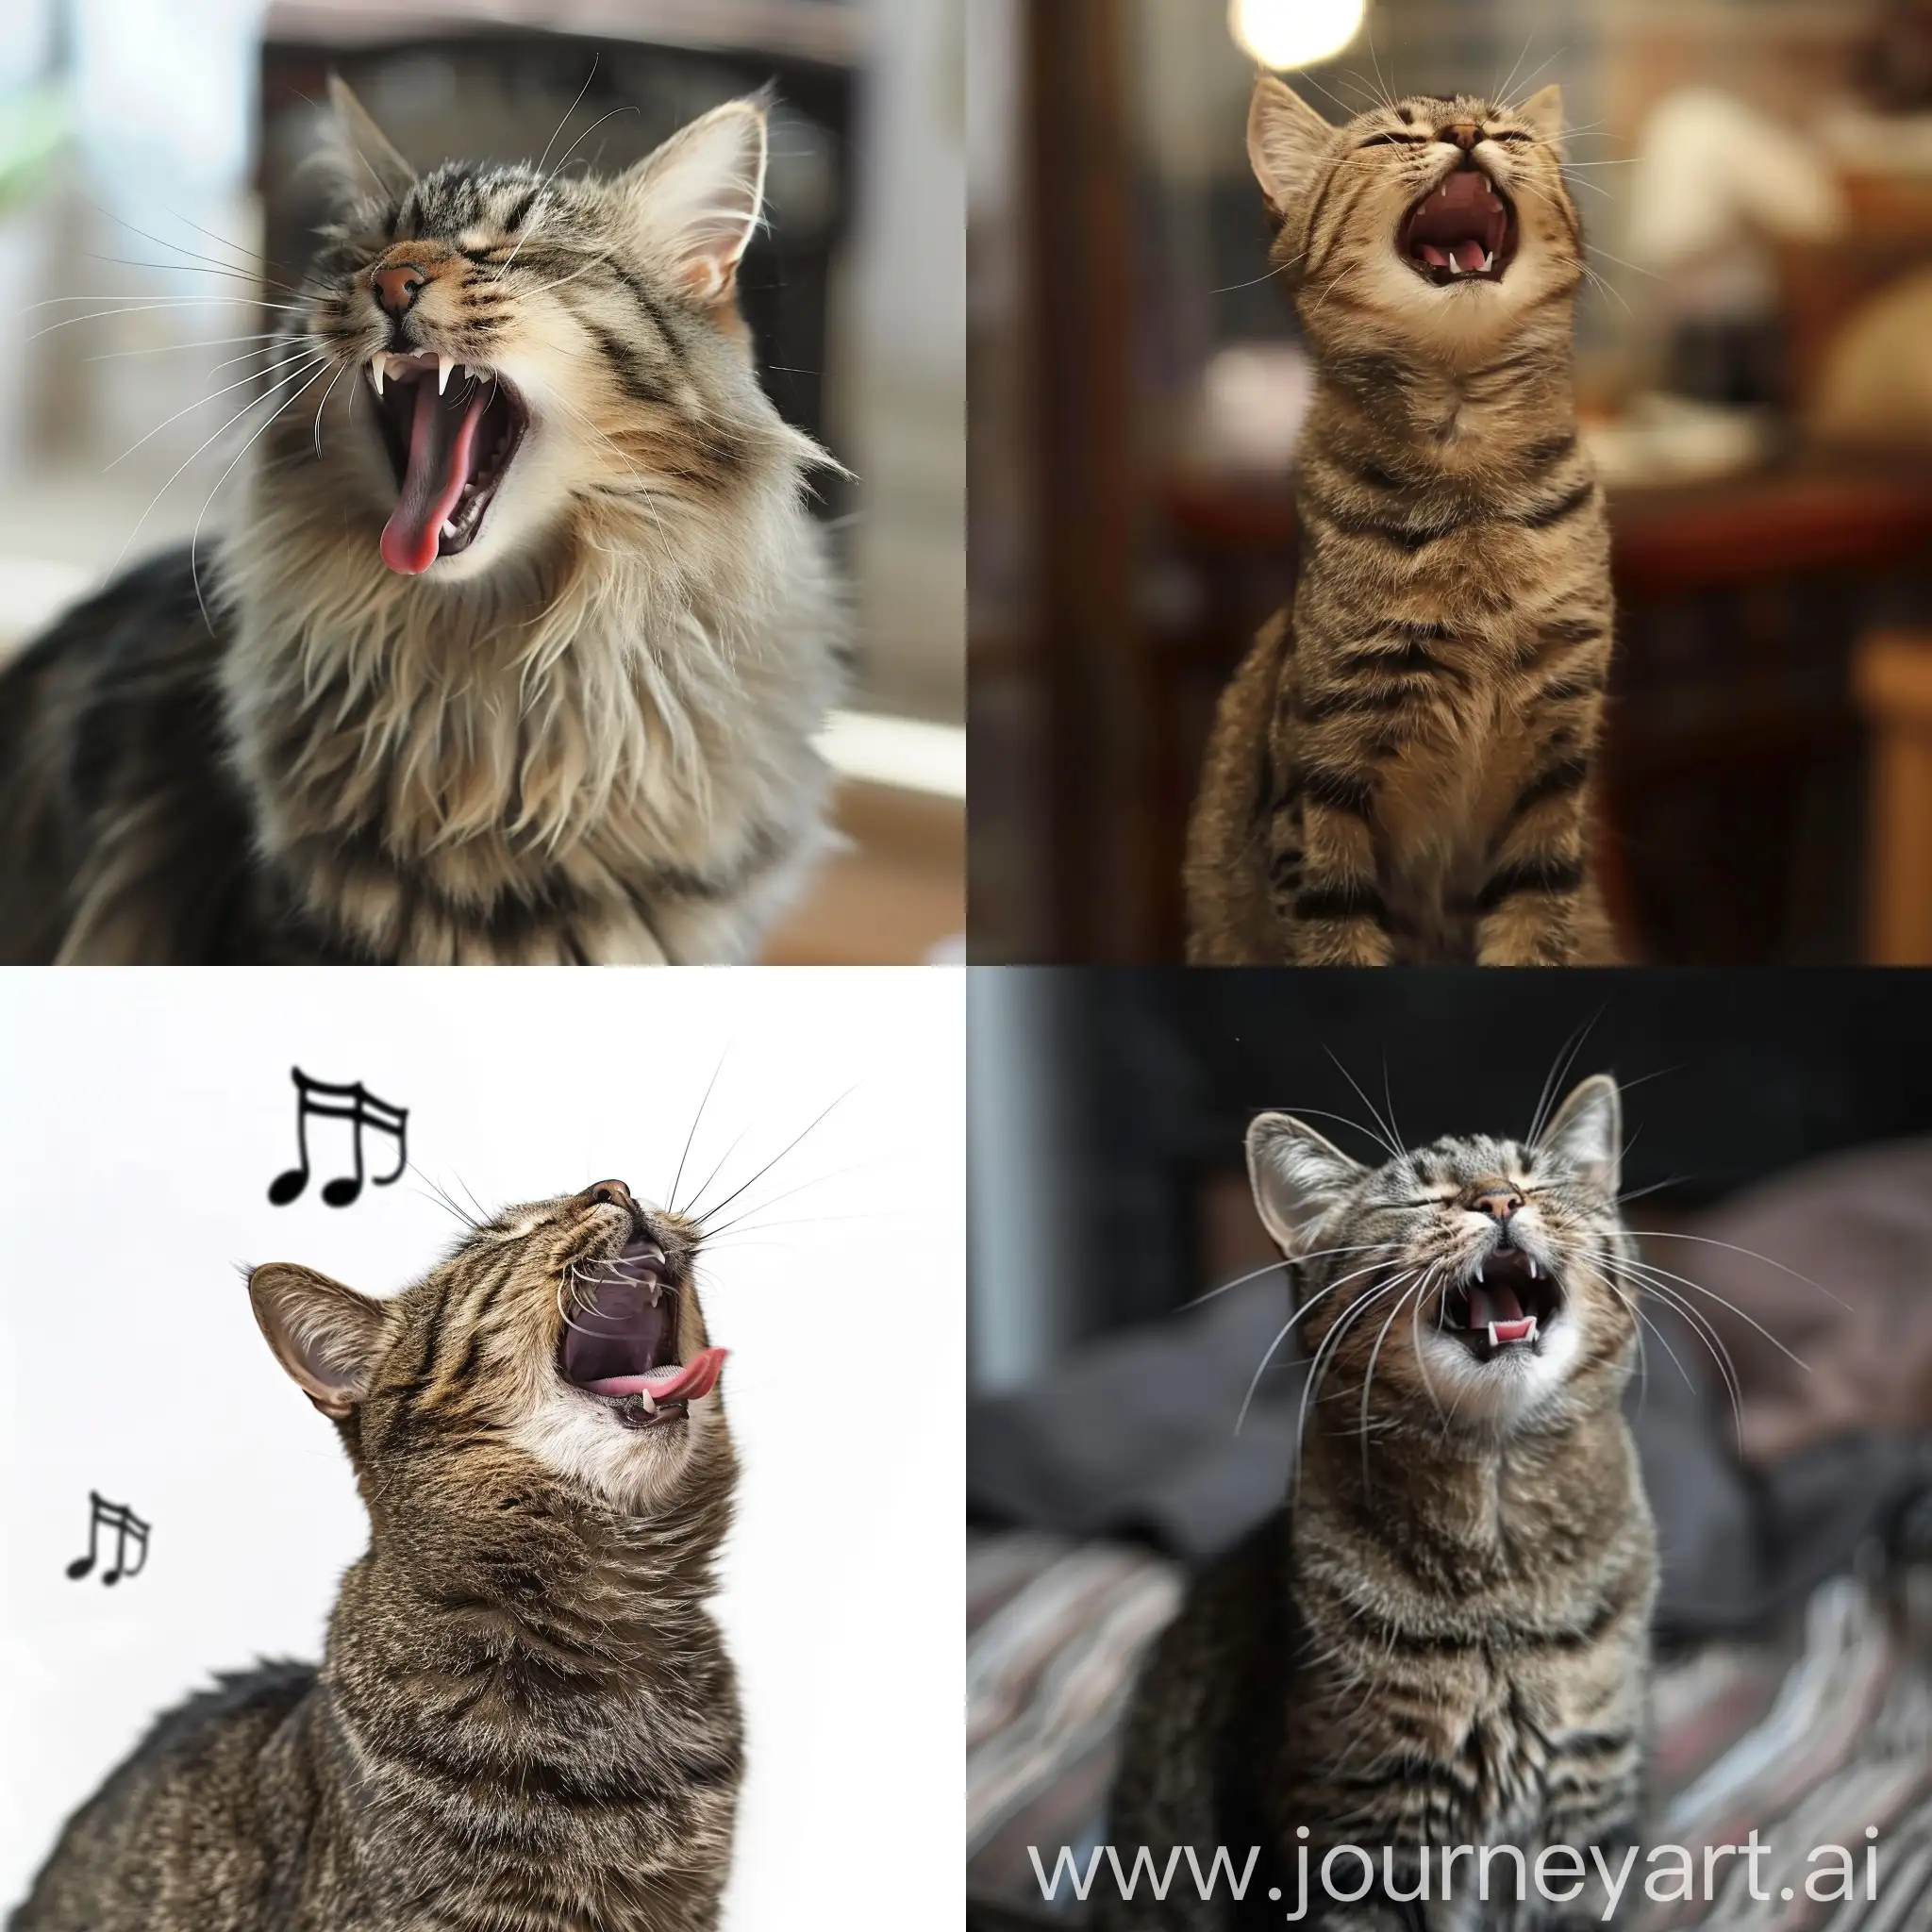 cat singing